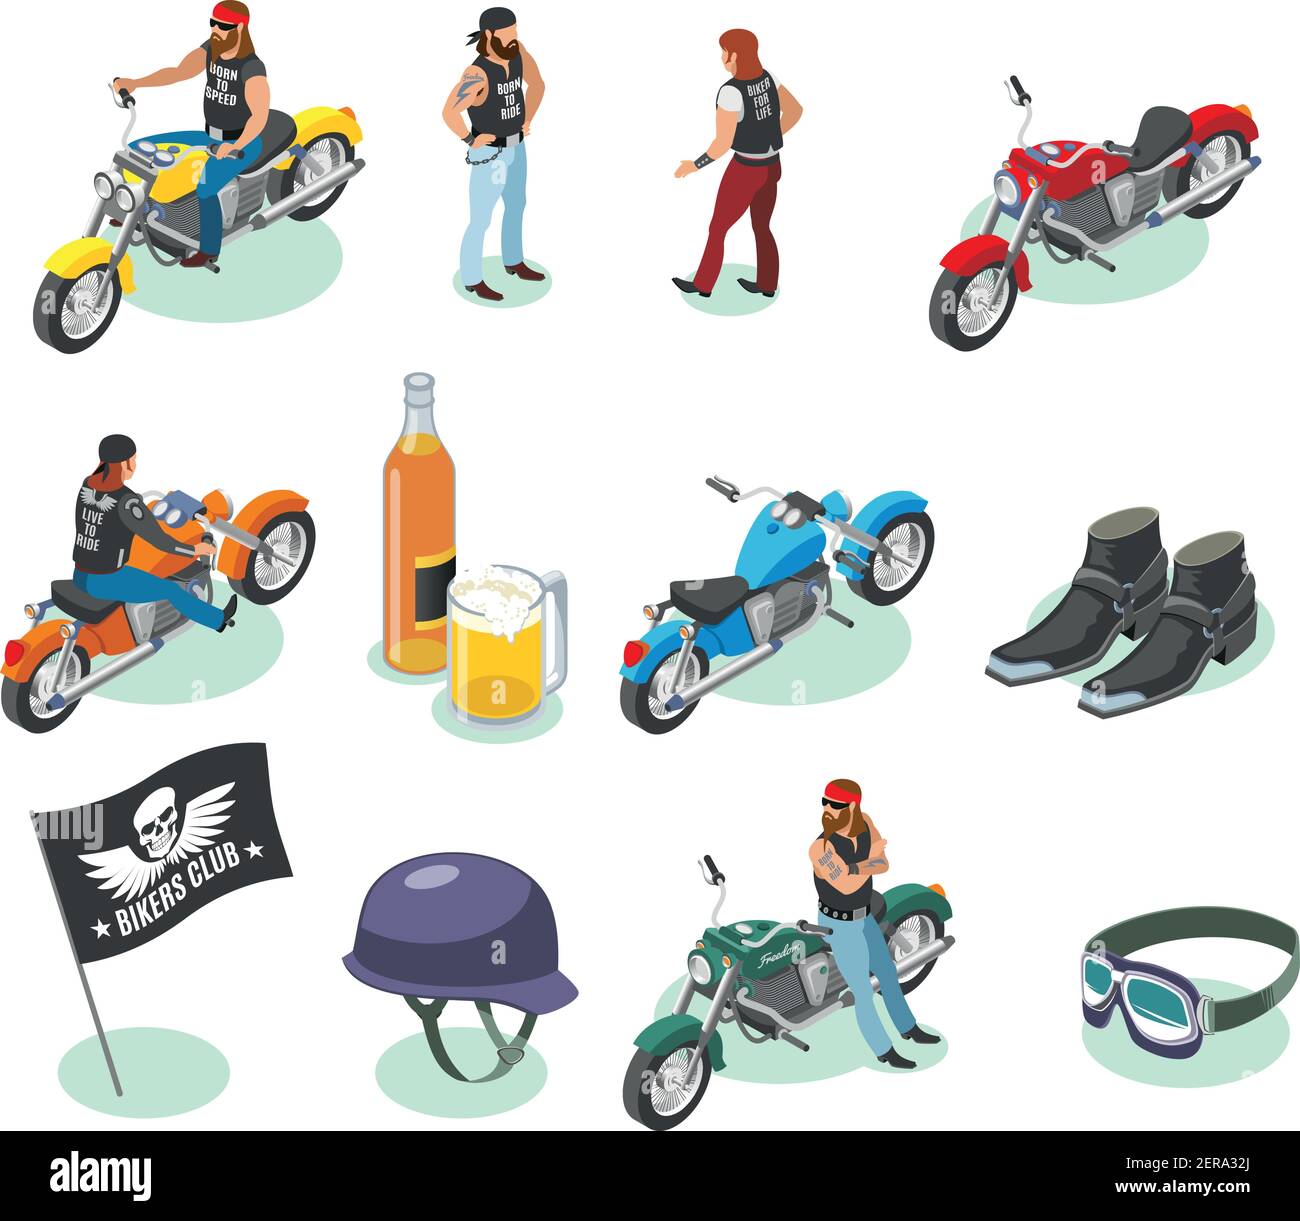 Biker icone isometriche raccolta di caratteri umani isolati e immagini di moto birra e oggetti di moda illustrazione vettoriale Illustrazione Vettoriale